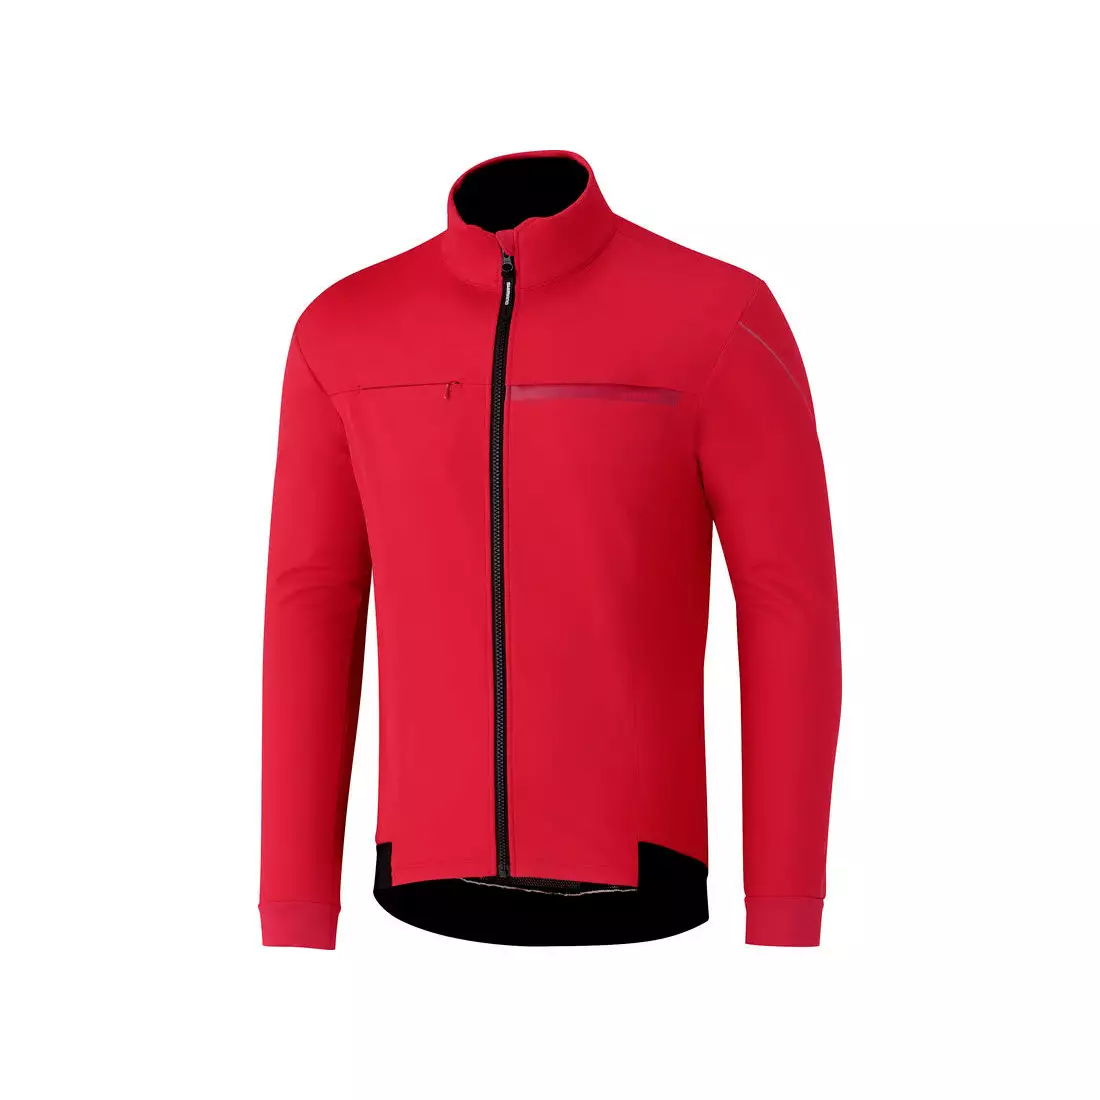 Zimní cyklistická bunda SHIMANO WINDBREAK, červená ECWJAPWQS22